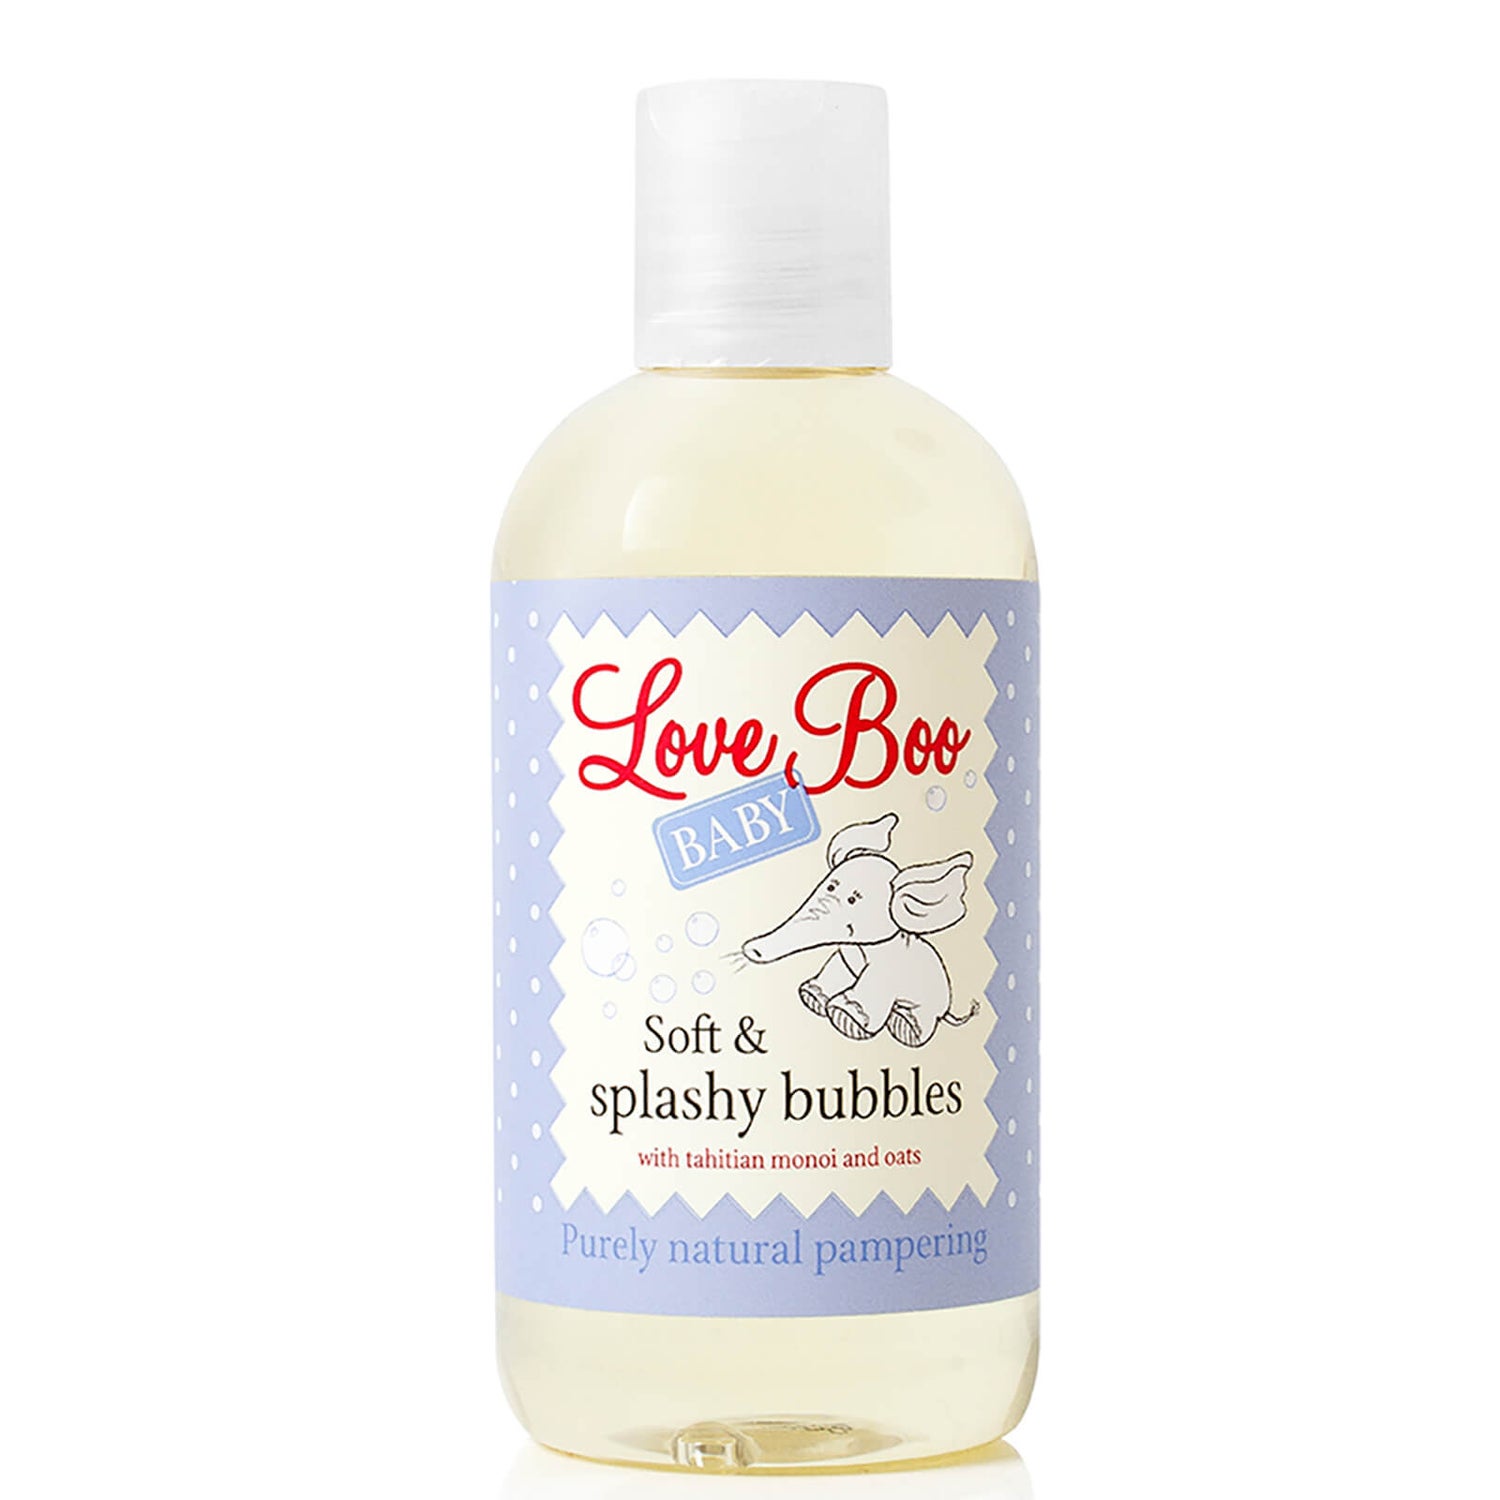 Gel de Banho Soft & Splashy Bubbles da Love Boo (250 ml)